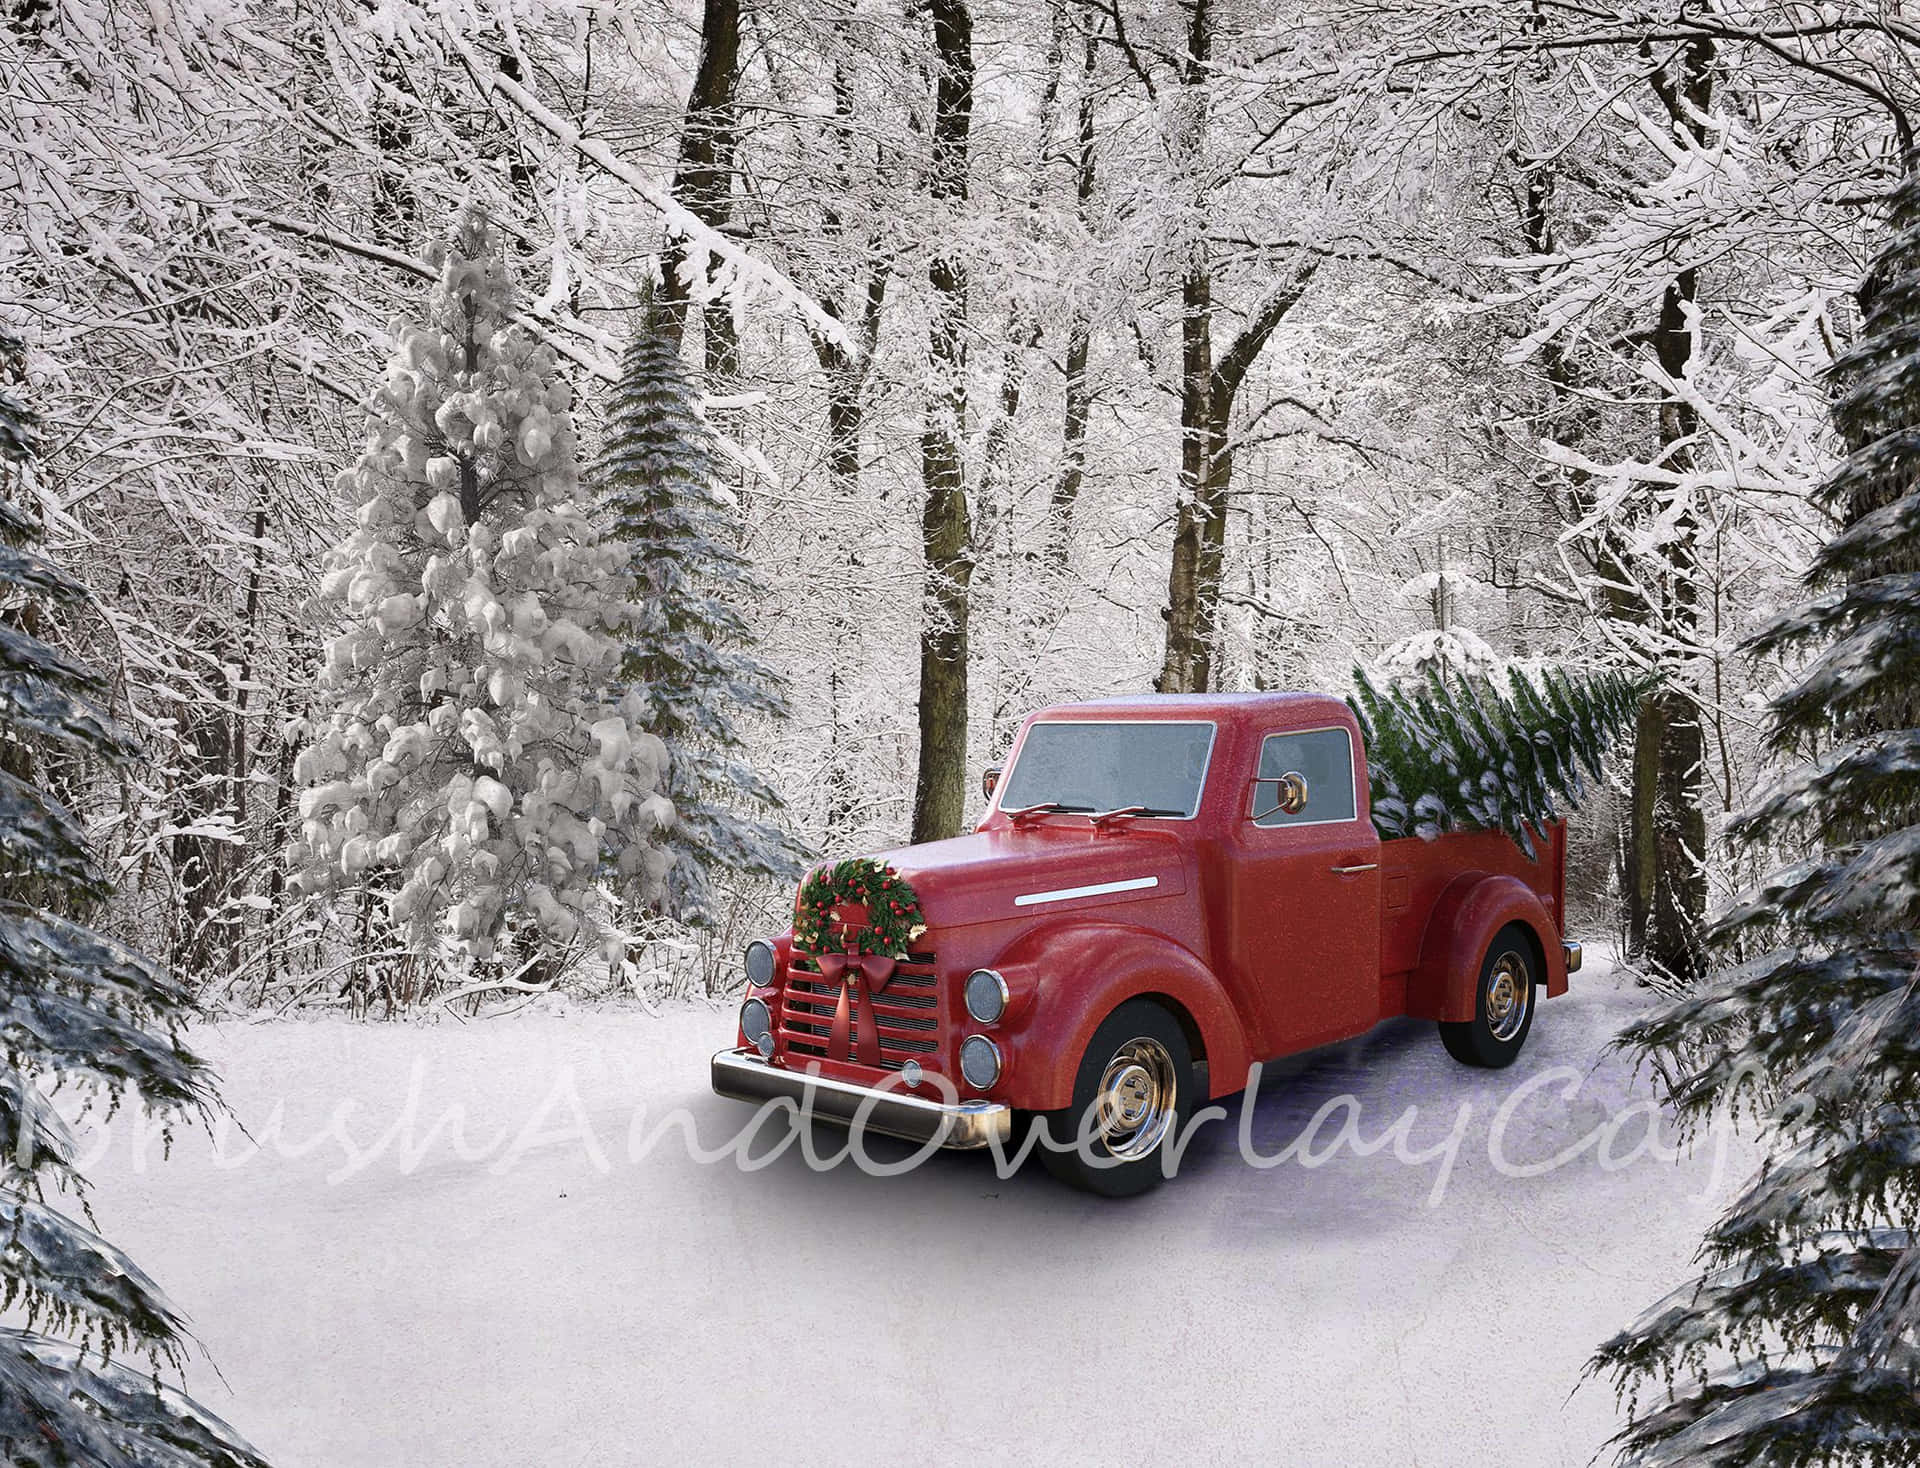 Einnostalgischer Lastwagen Zur Weihnachtszeit. Wallpaper